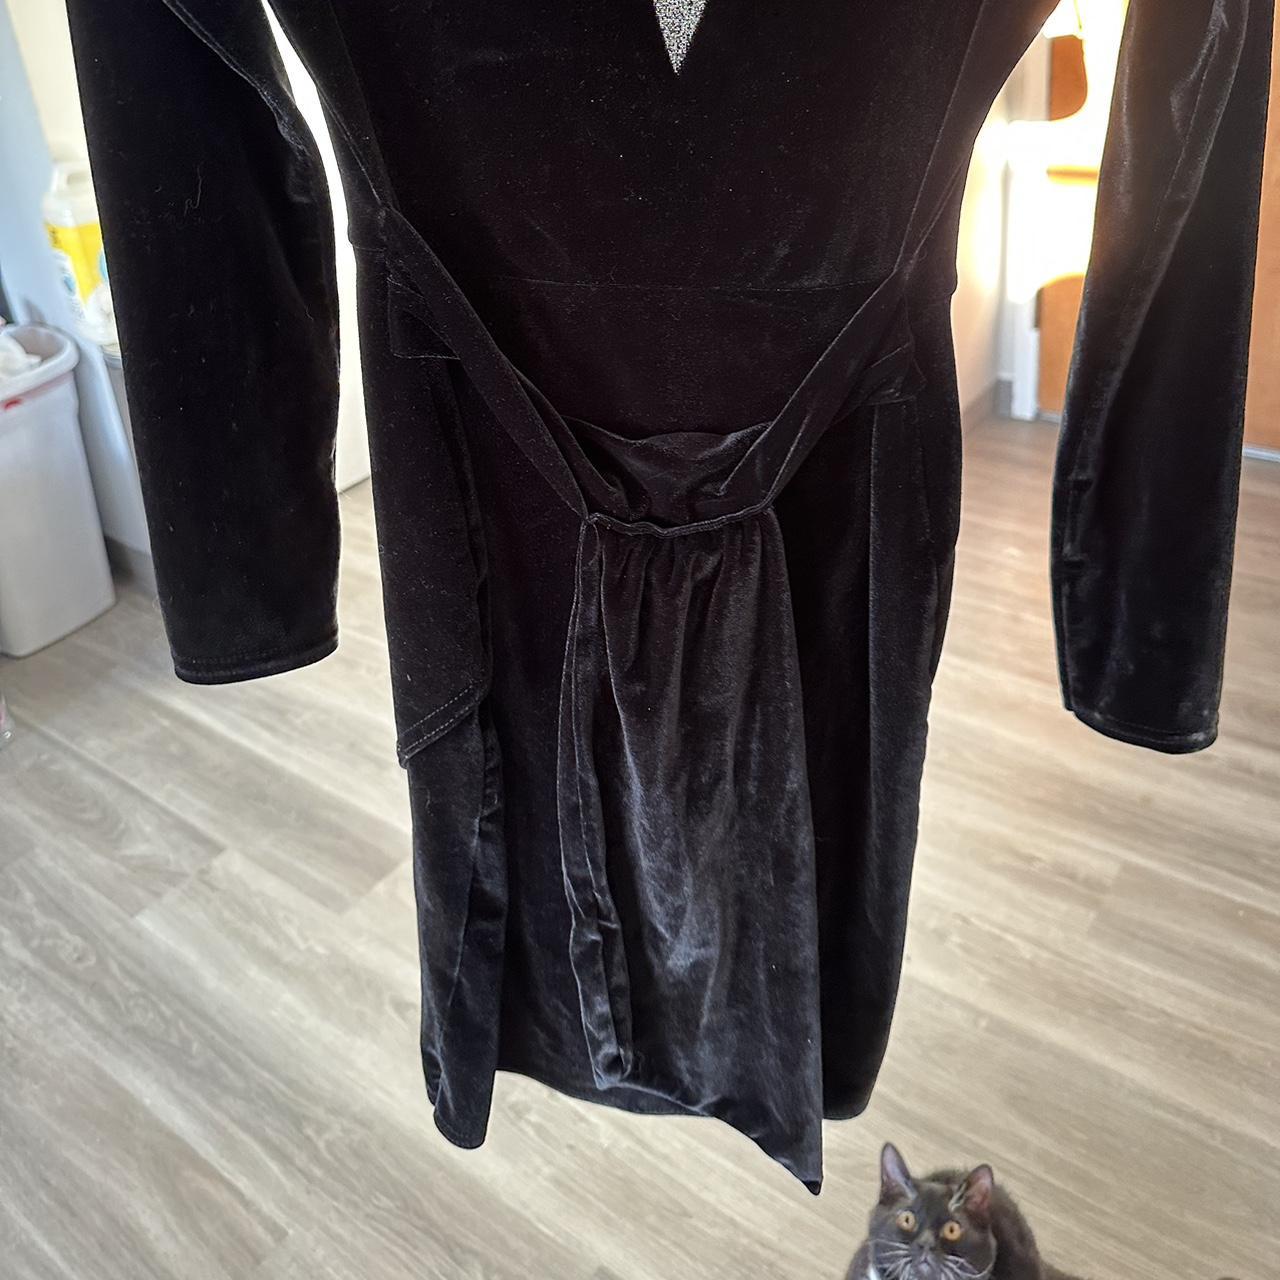 Femme Luxe Women's Black Dress (2)